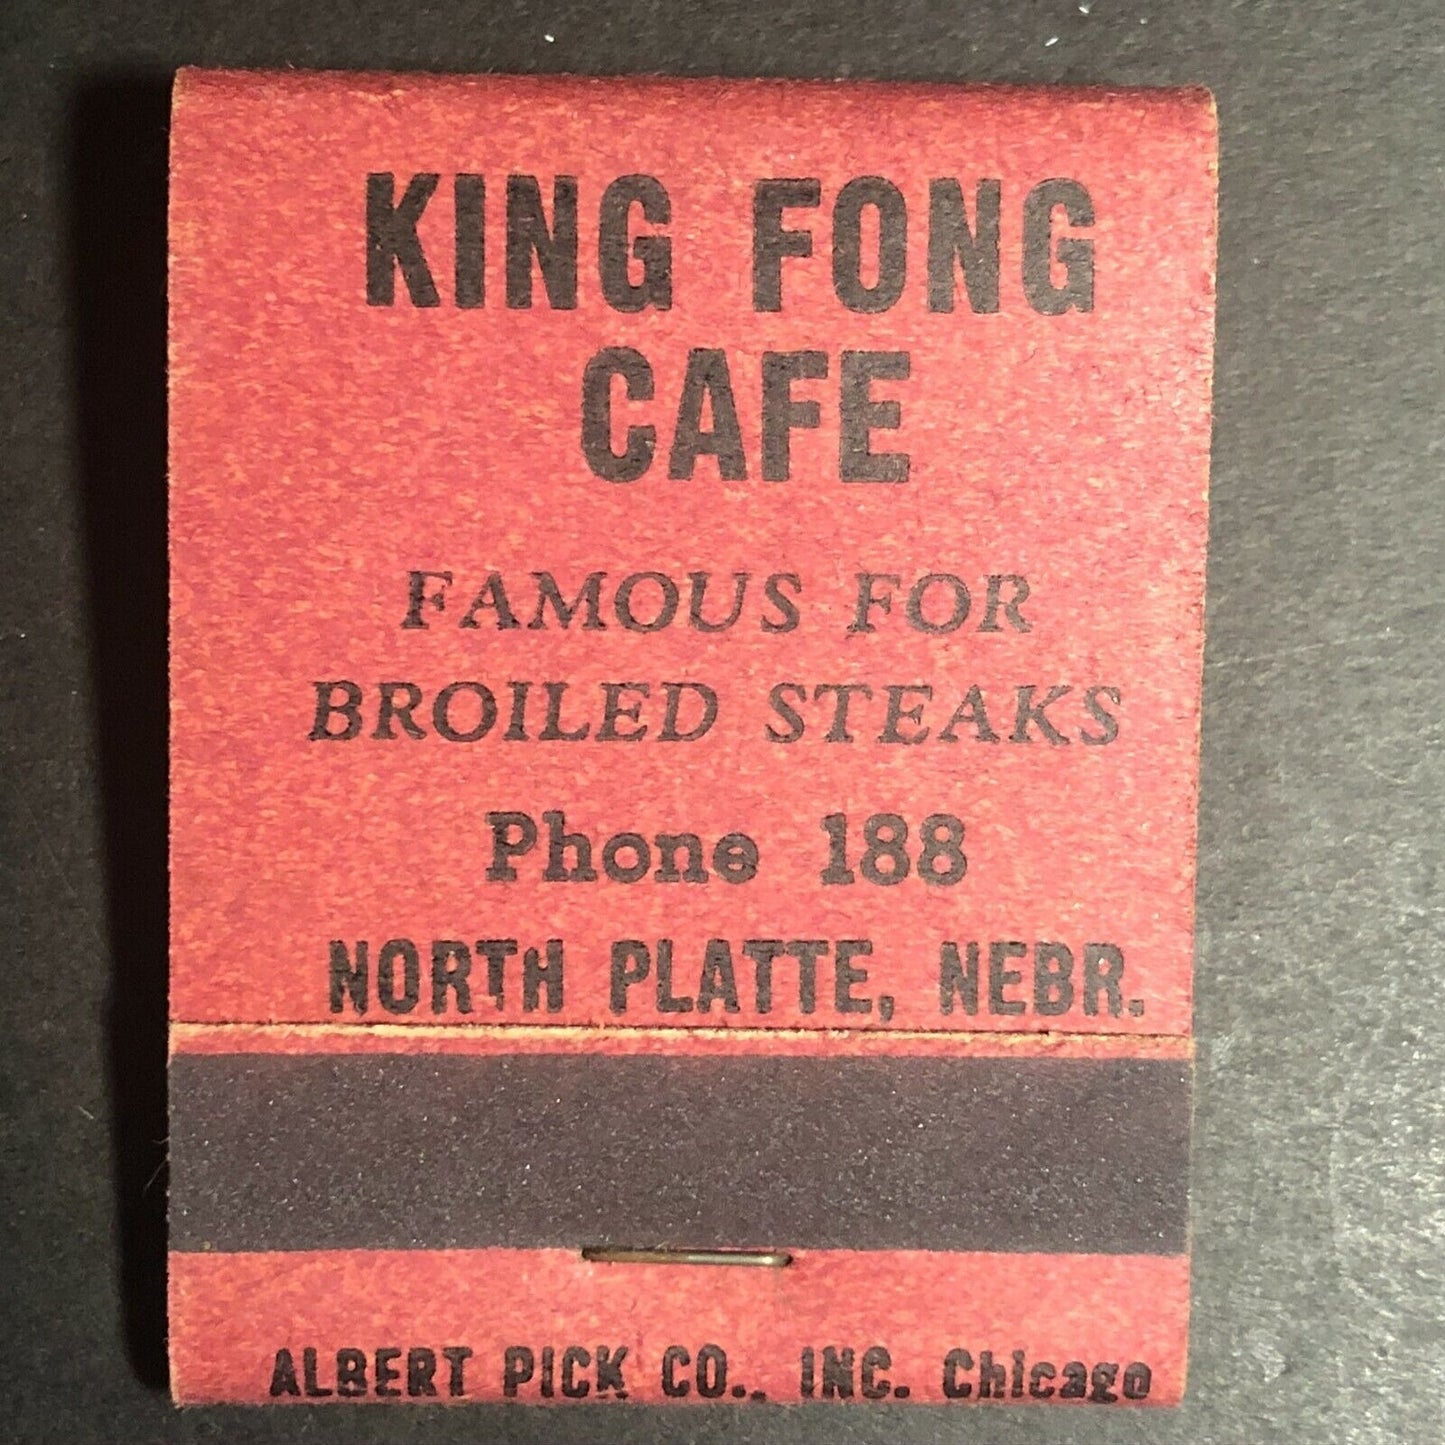 1930's (possibly 20's) Full Matchbook - "King Fong Cafe" North Platte, NEBR